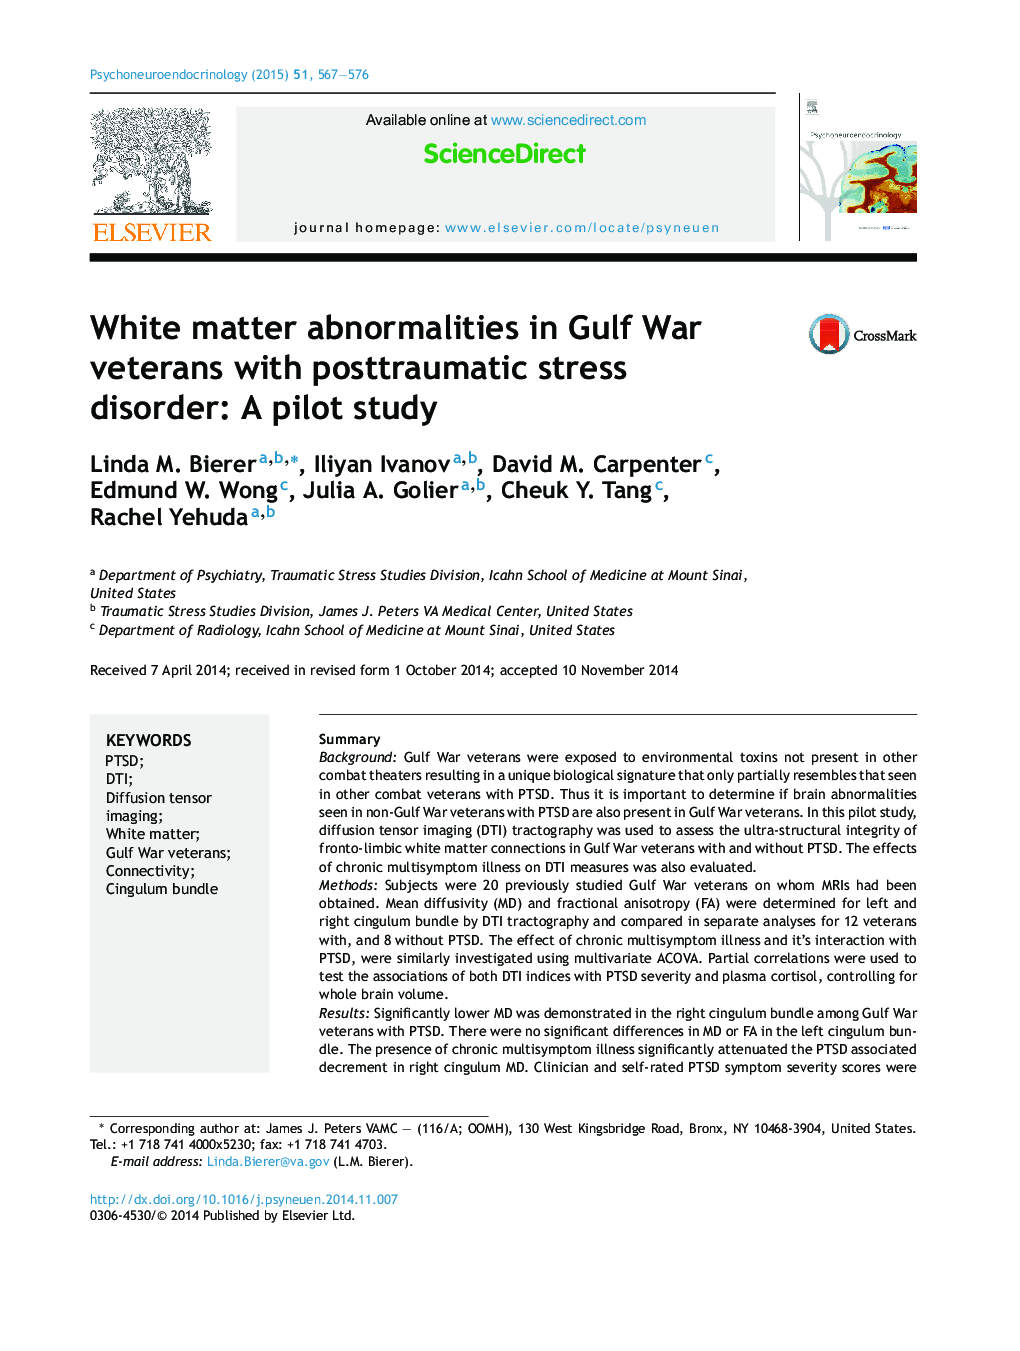 ناهنجاری های ماده سفید در جانبازان جنگ خلیج فارس با اختلال استرس پس از سانحه: یک مطالعه آزمایشی 